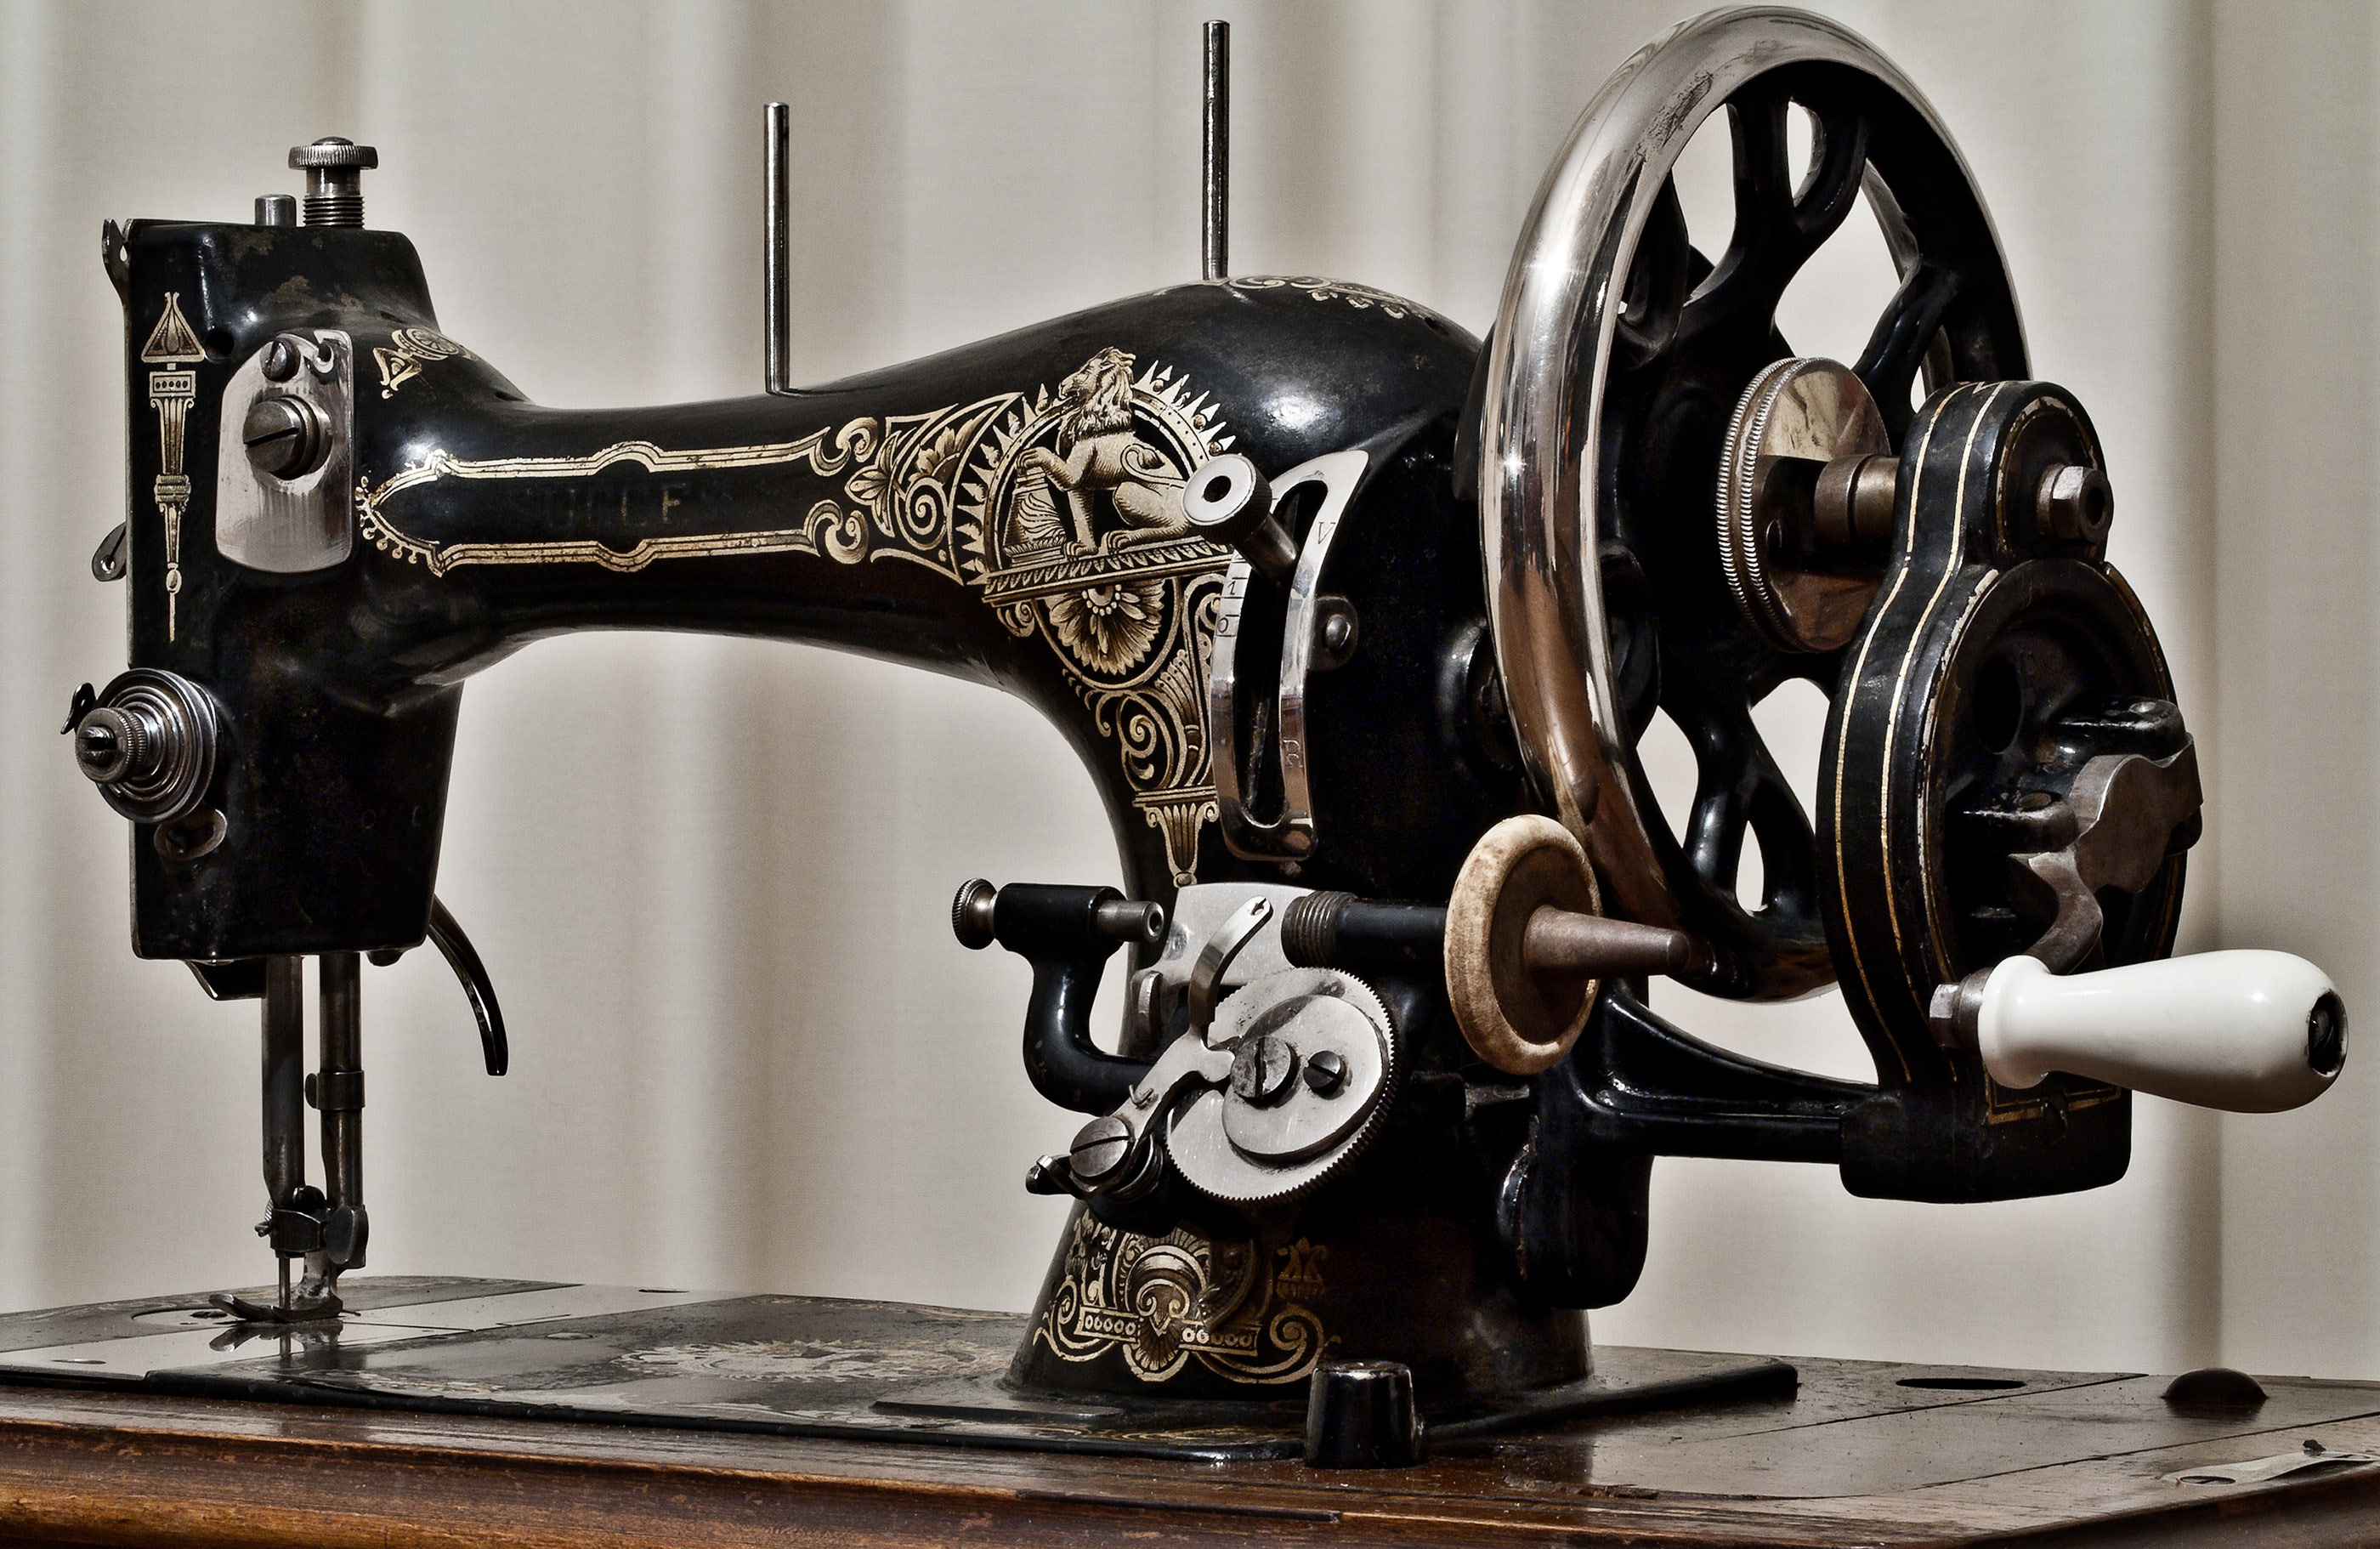 Сдать старую швейную машину. как сдать швейные машинки на металлолом. сколько денег можно получить